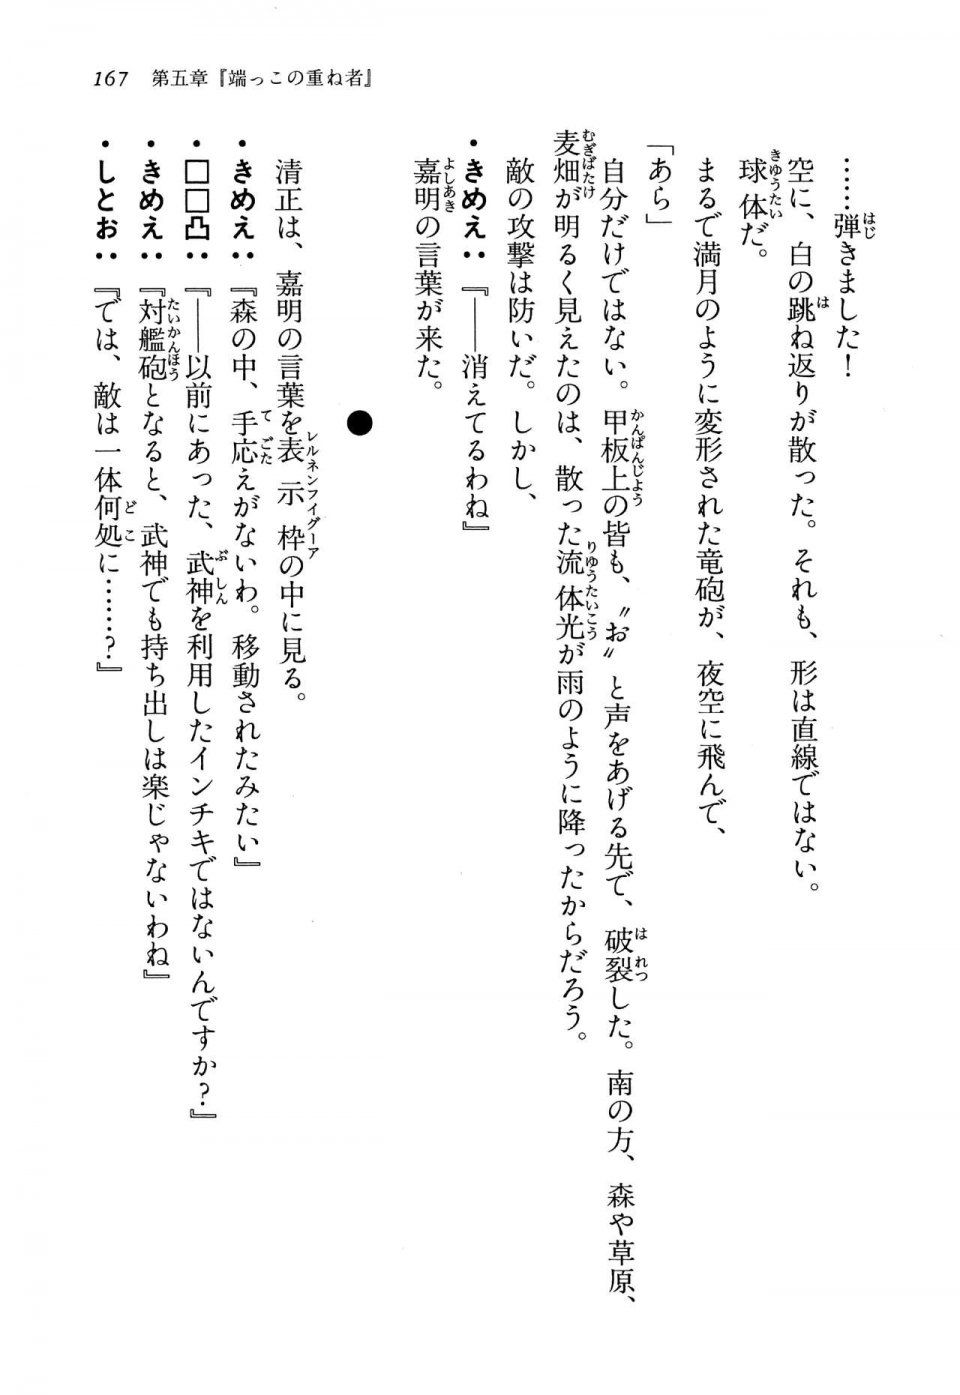 Kyoukai Senjou no Horizon LN Vol 13(6A) - Photo #167